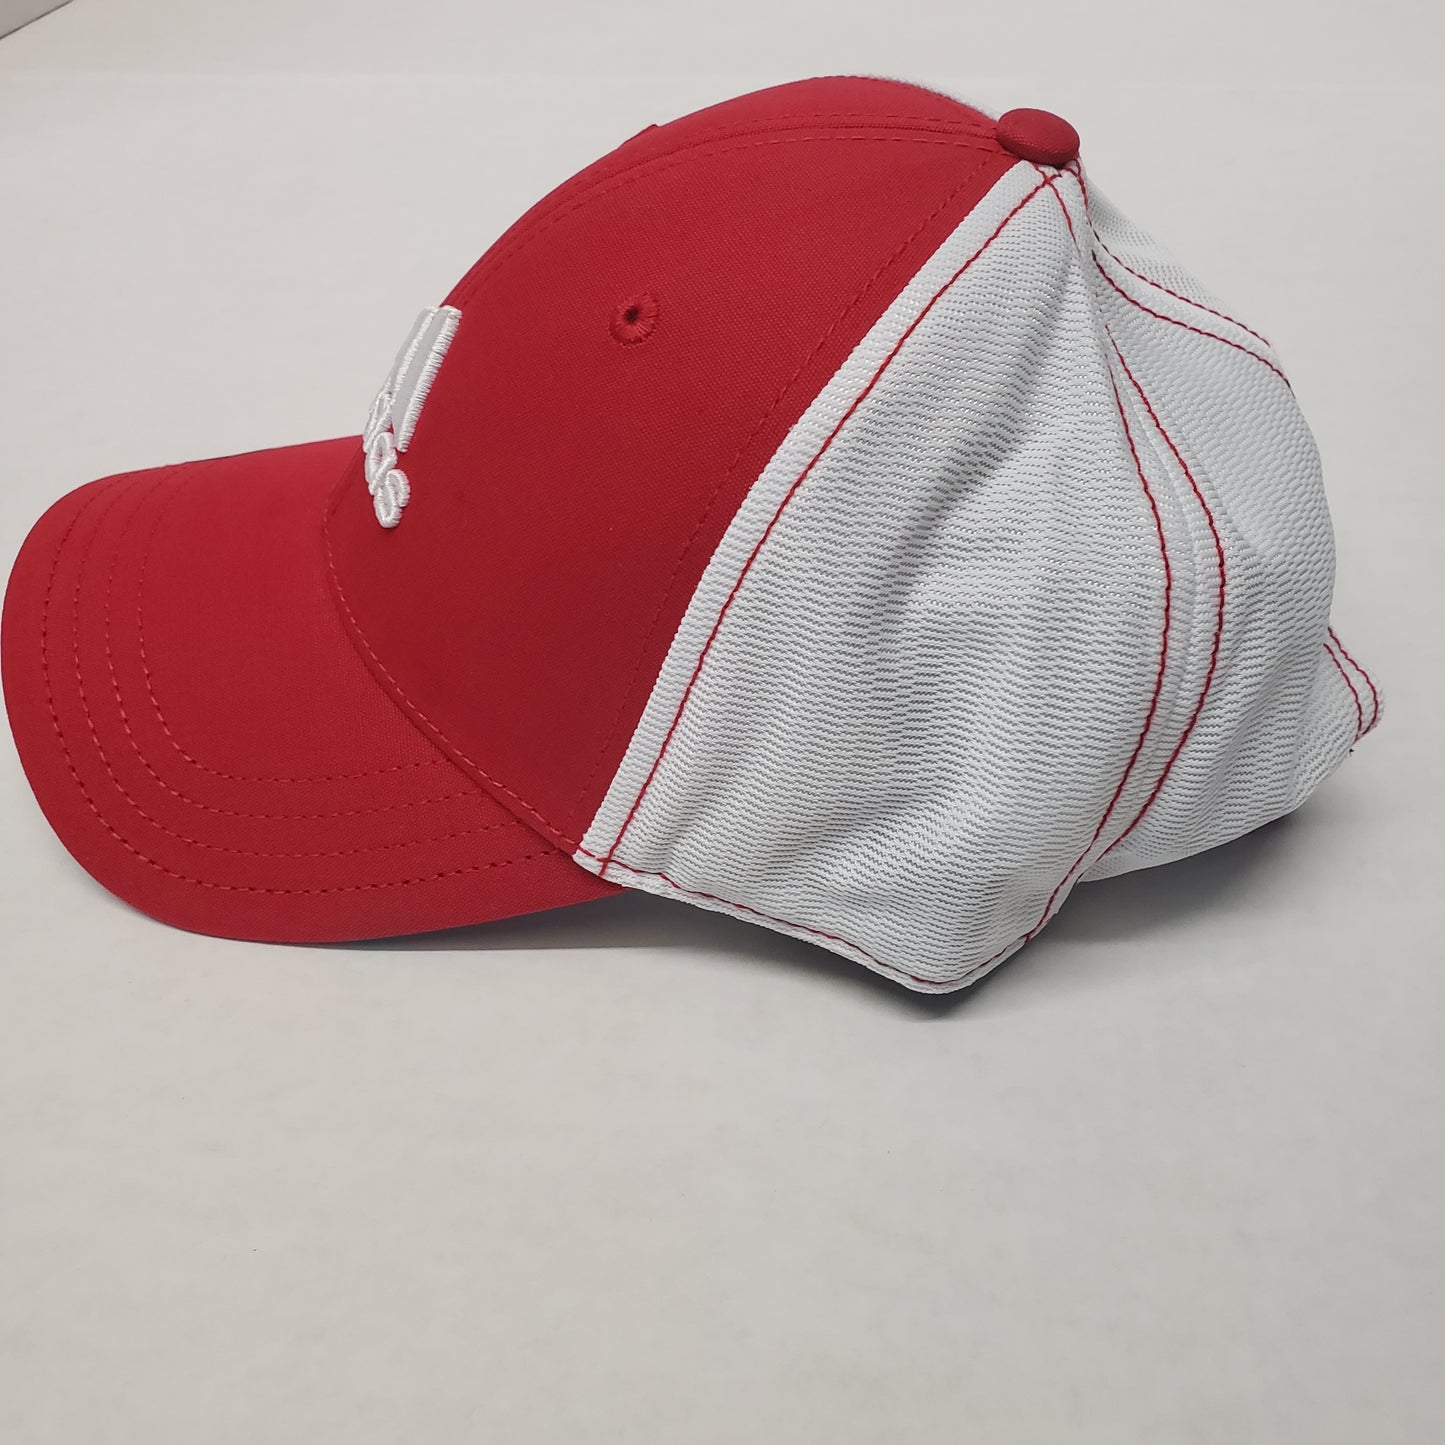 Adidas Flyer 4.0 Golf Hat